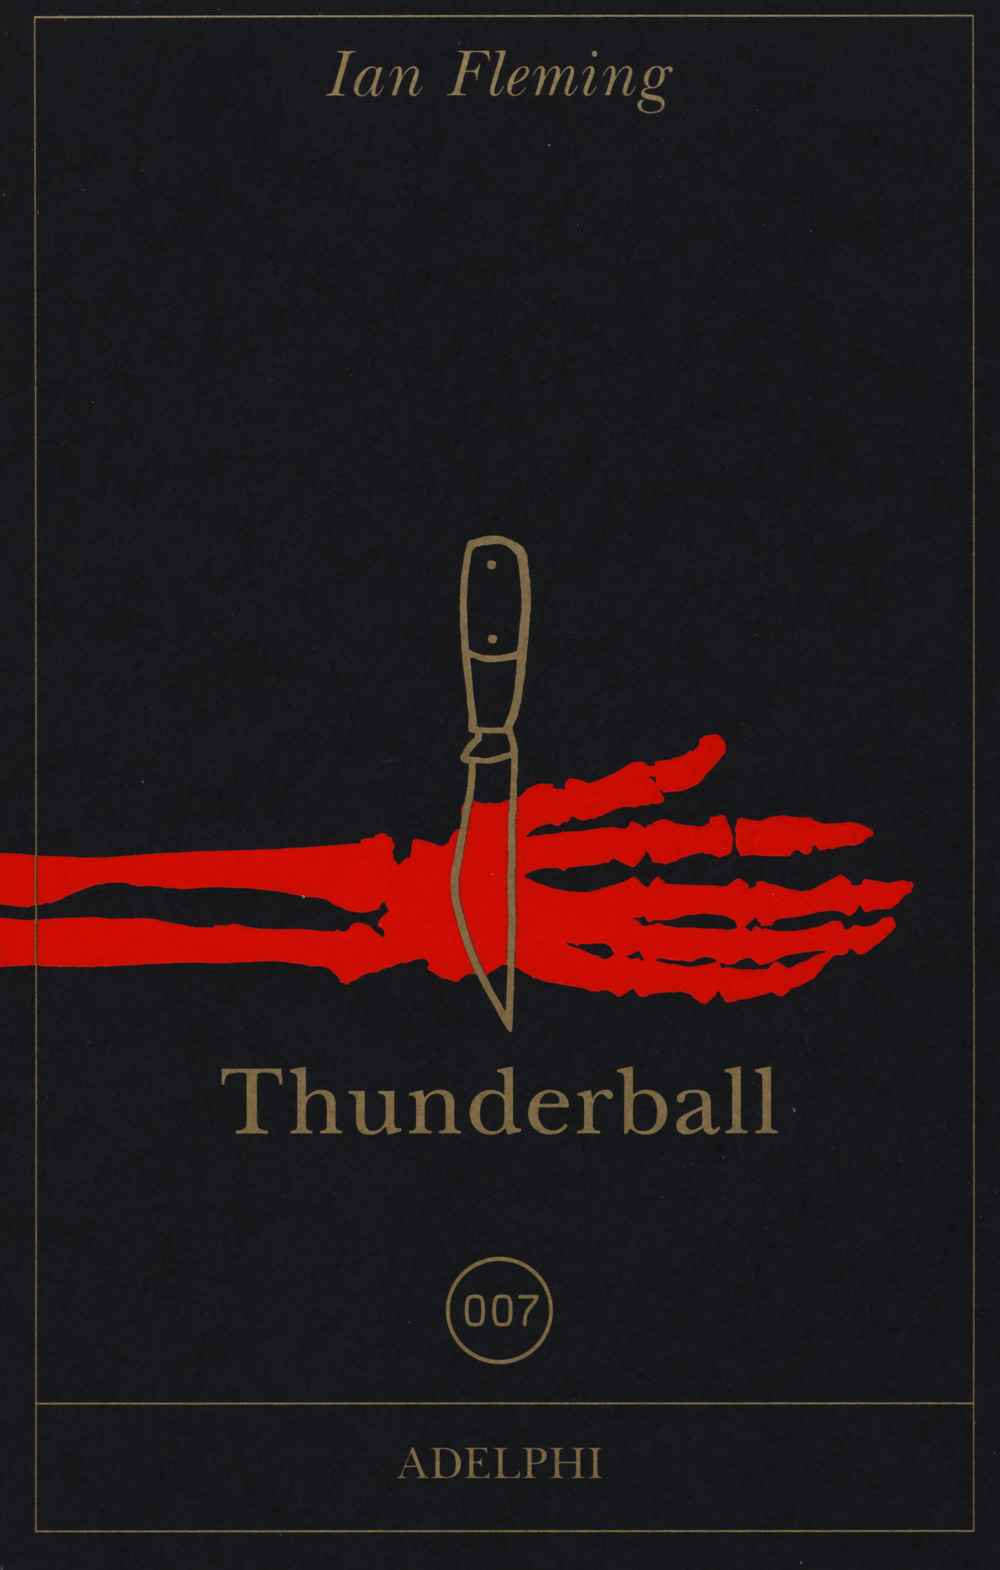 Libri Ian Fleming - Thunderball NUOVO SIGILLATO, EDIZIONE DEL 23/05/2019 SUBITO DISPONIBILE